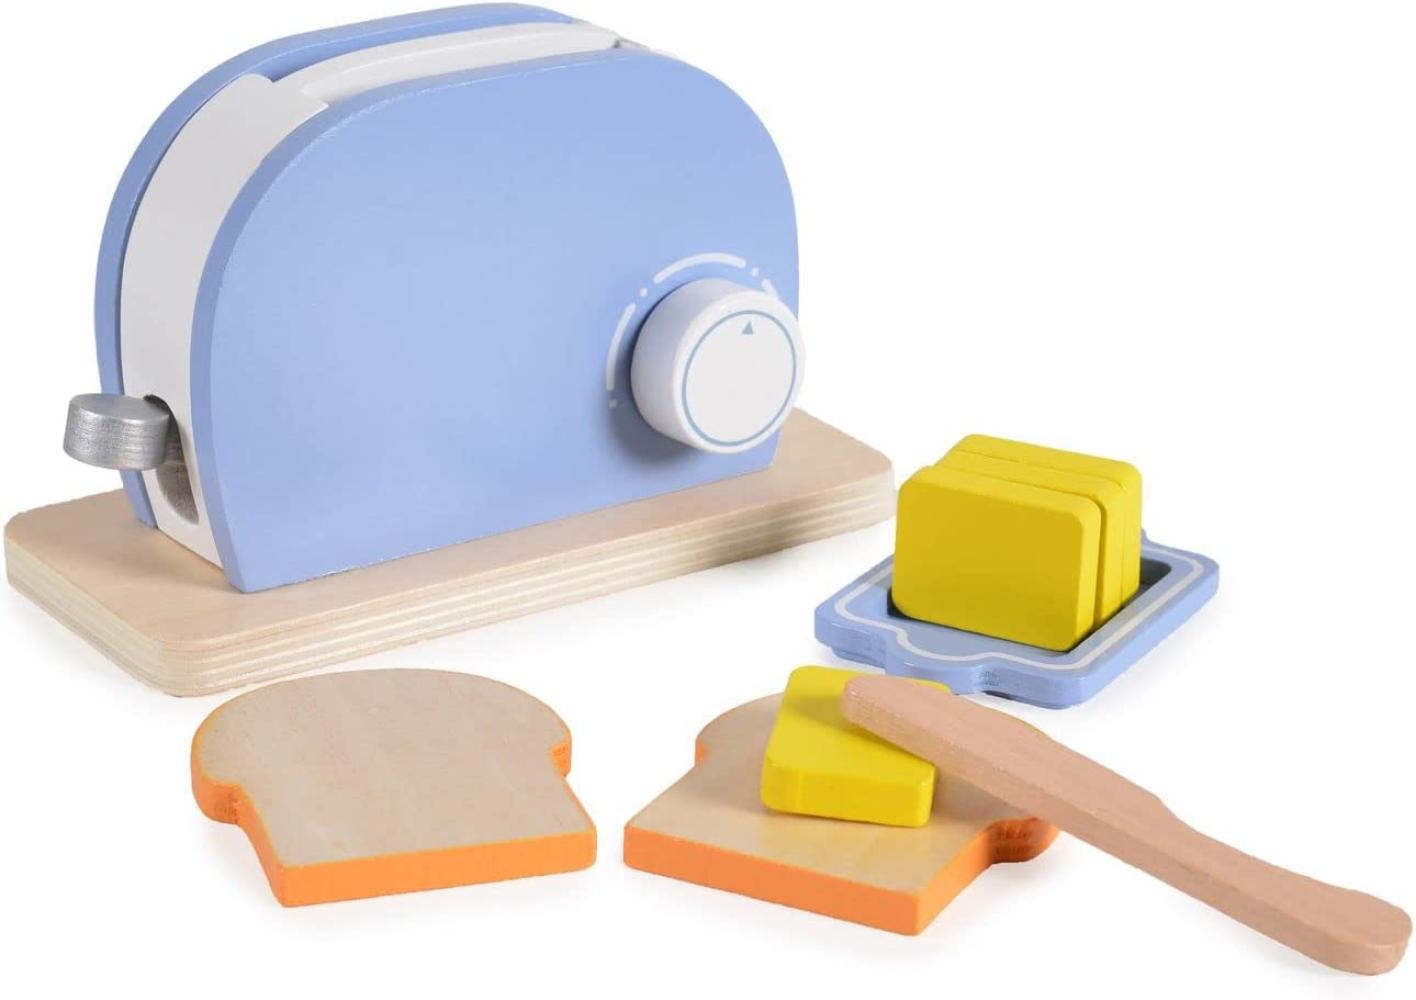 Moni Spielzeug Toaster 4341 Set Holz, Drehknopf, Butter, Messer, Toastscheiben hellblau Bild 1